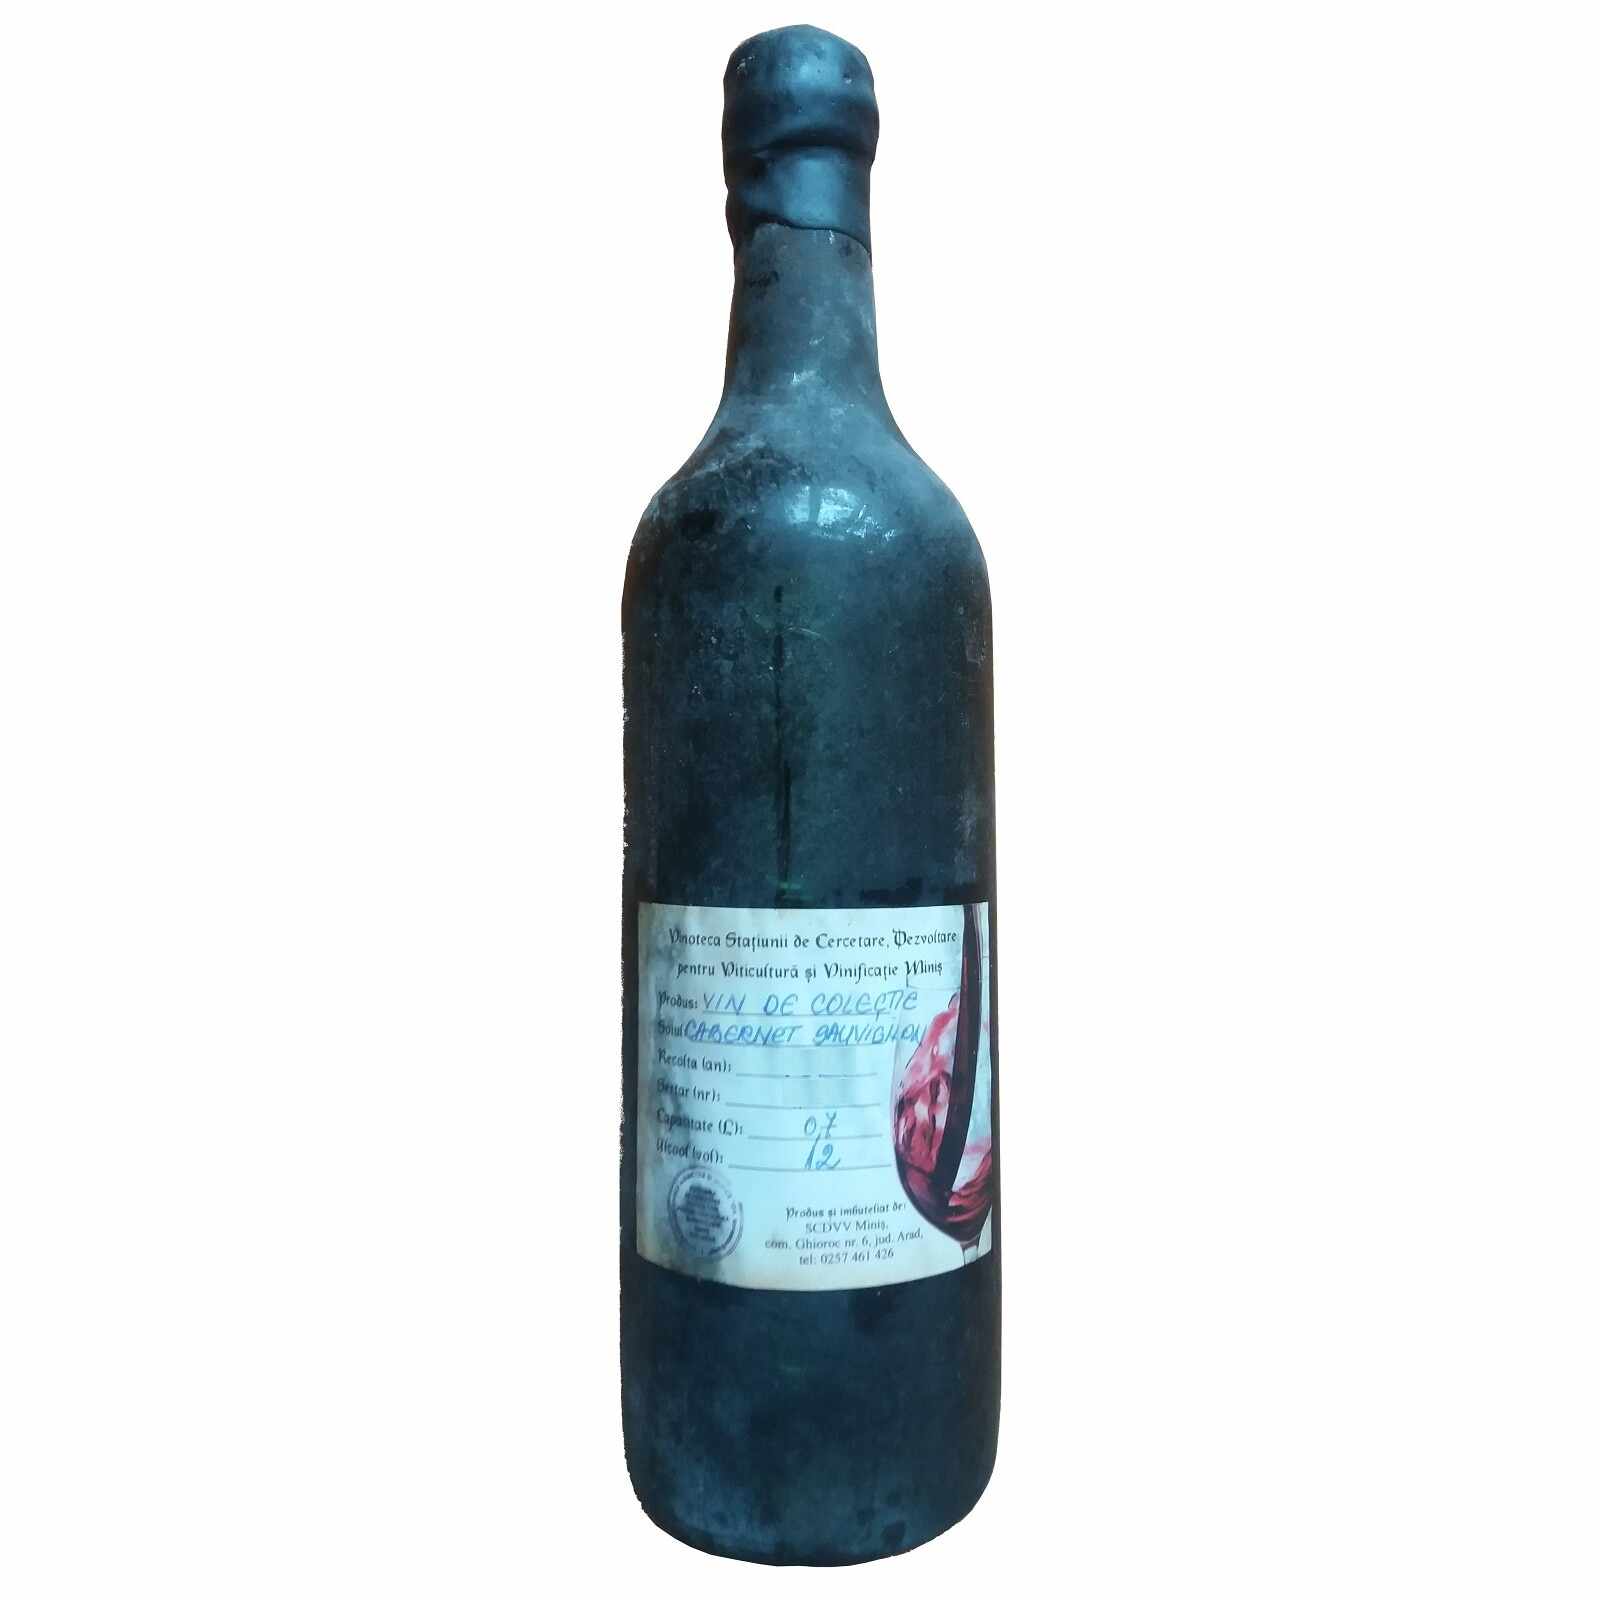 Vin de colectie Minis Cabernet Sauvignon 1967 rosu, in cutie lemn, 0.7L